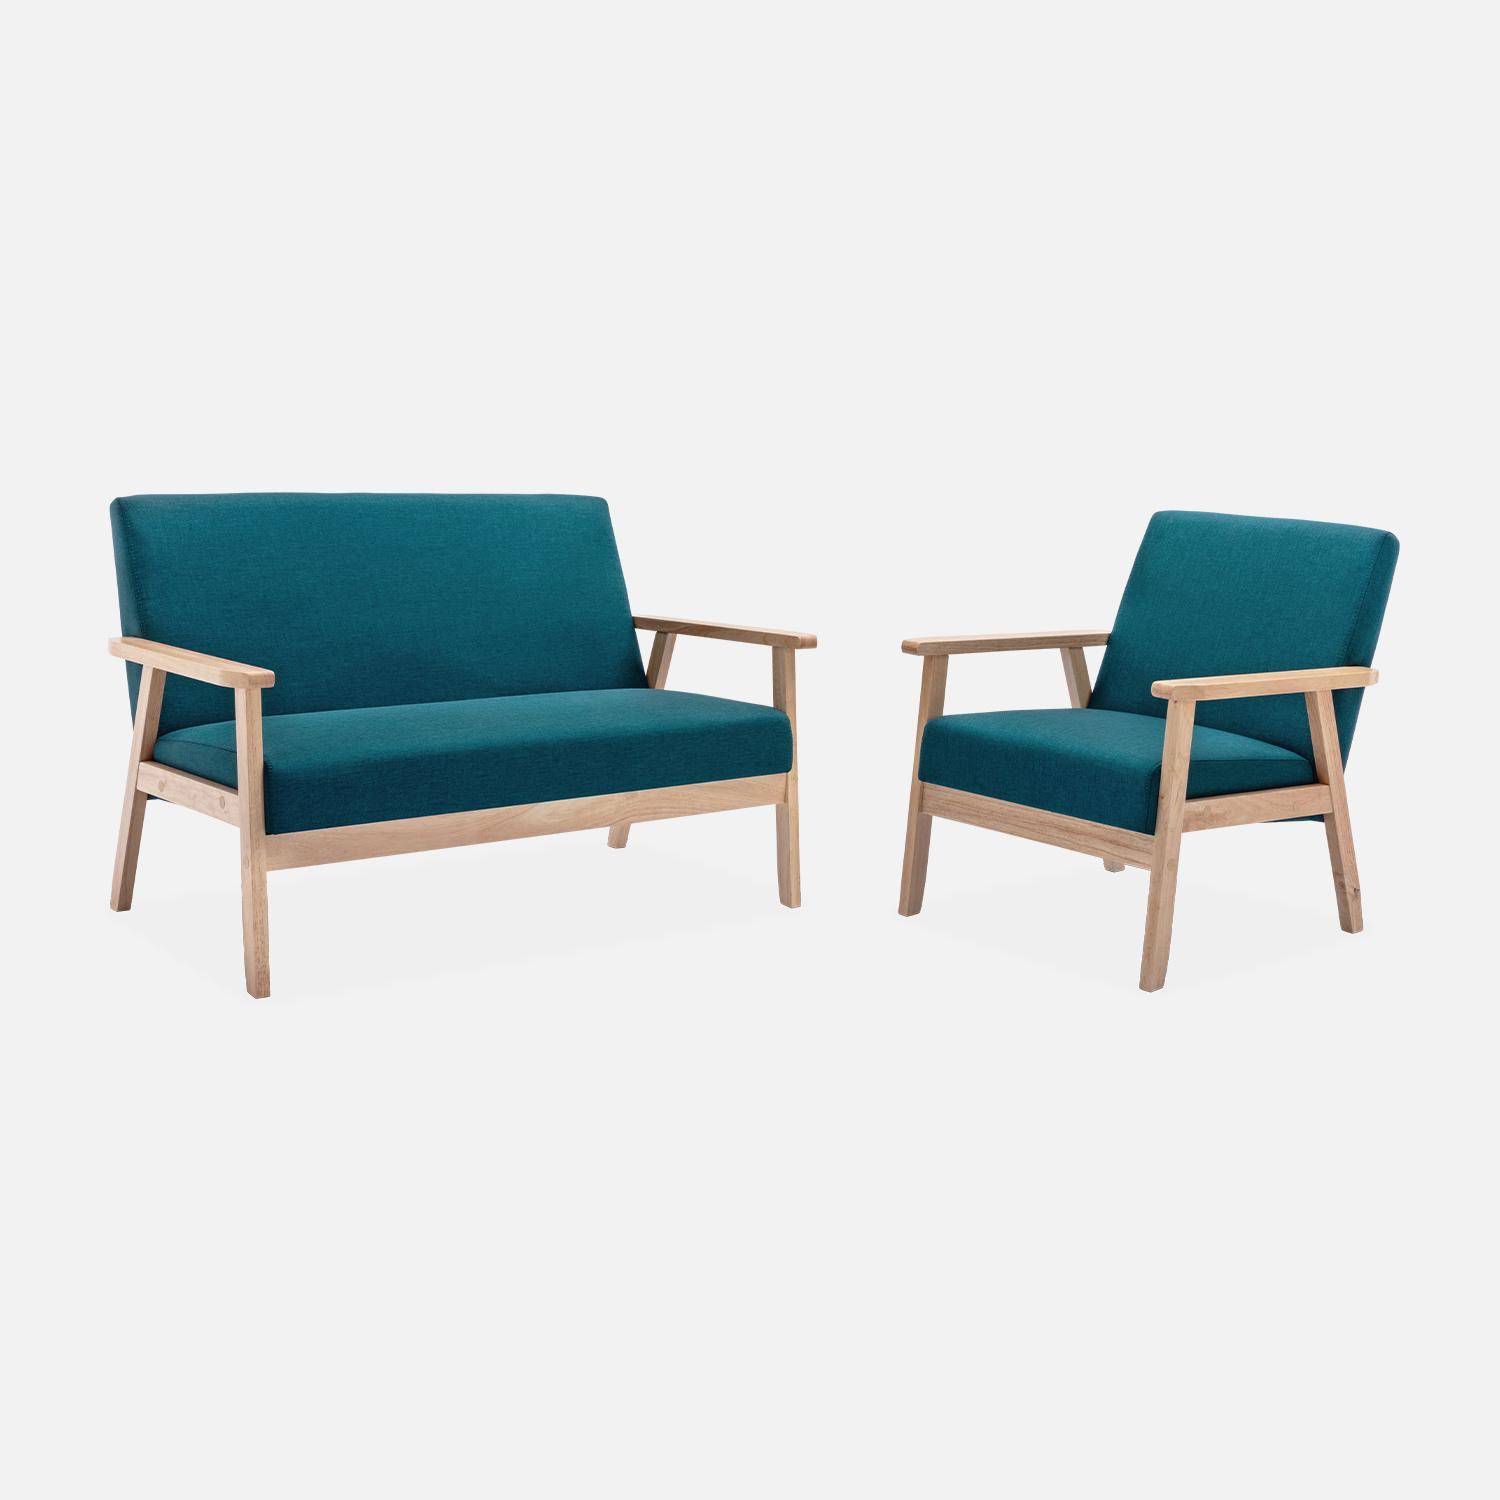 Banco y sillón escandinavos de madera y tela azul petróleo L 114 x A 69,5 x Alt 73cm,sweeek,Photo2